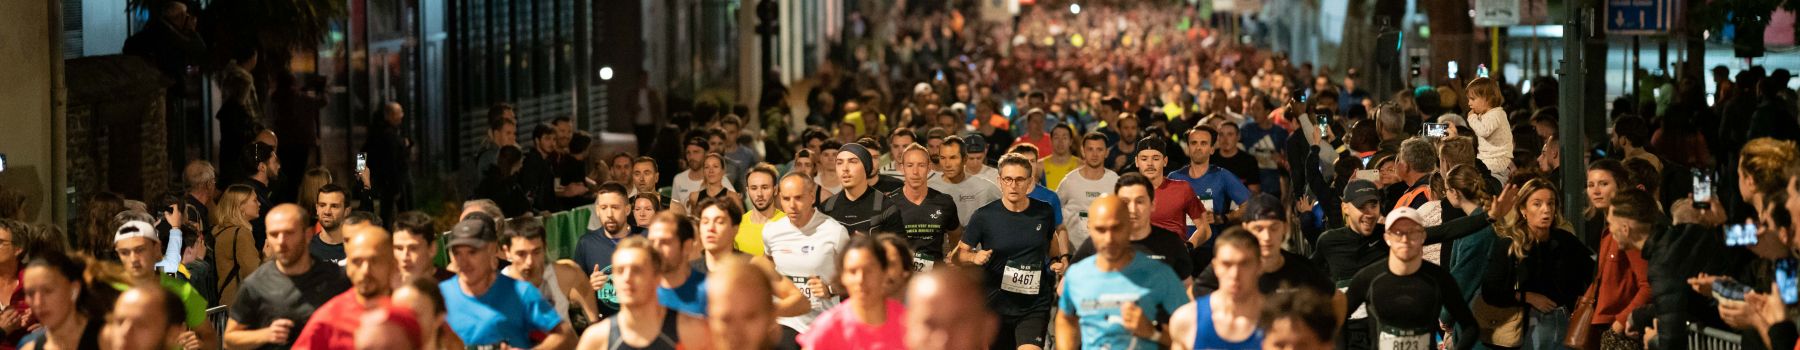 Le Marathon Vert : une course à pied en faveur de la planète